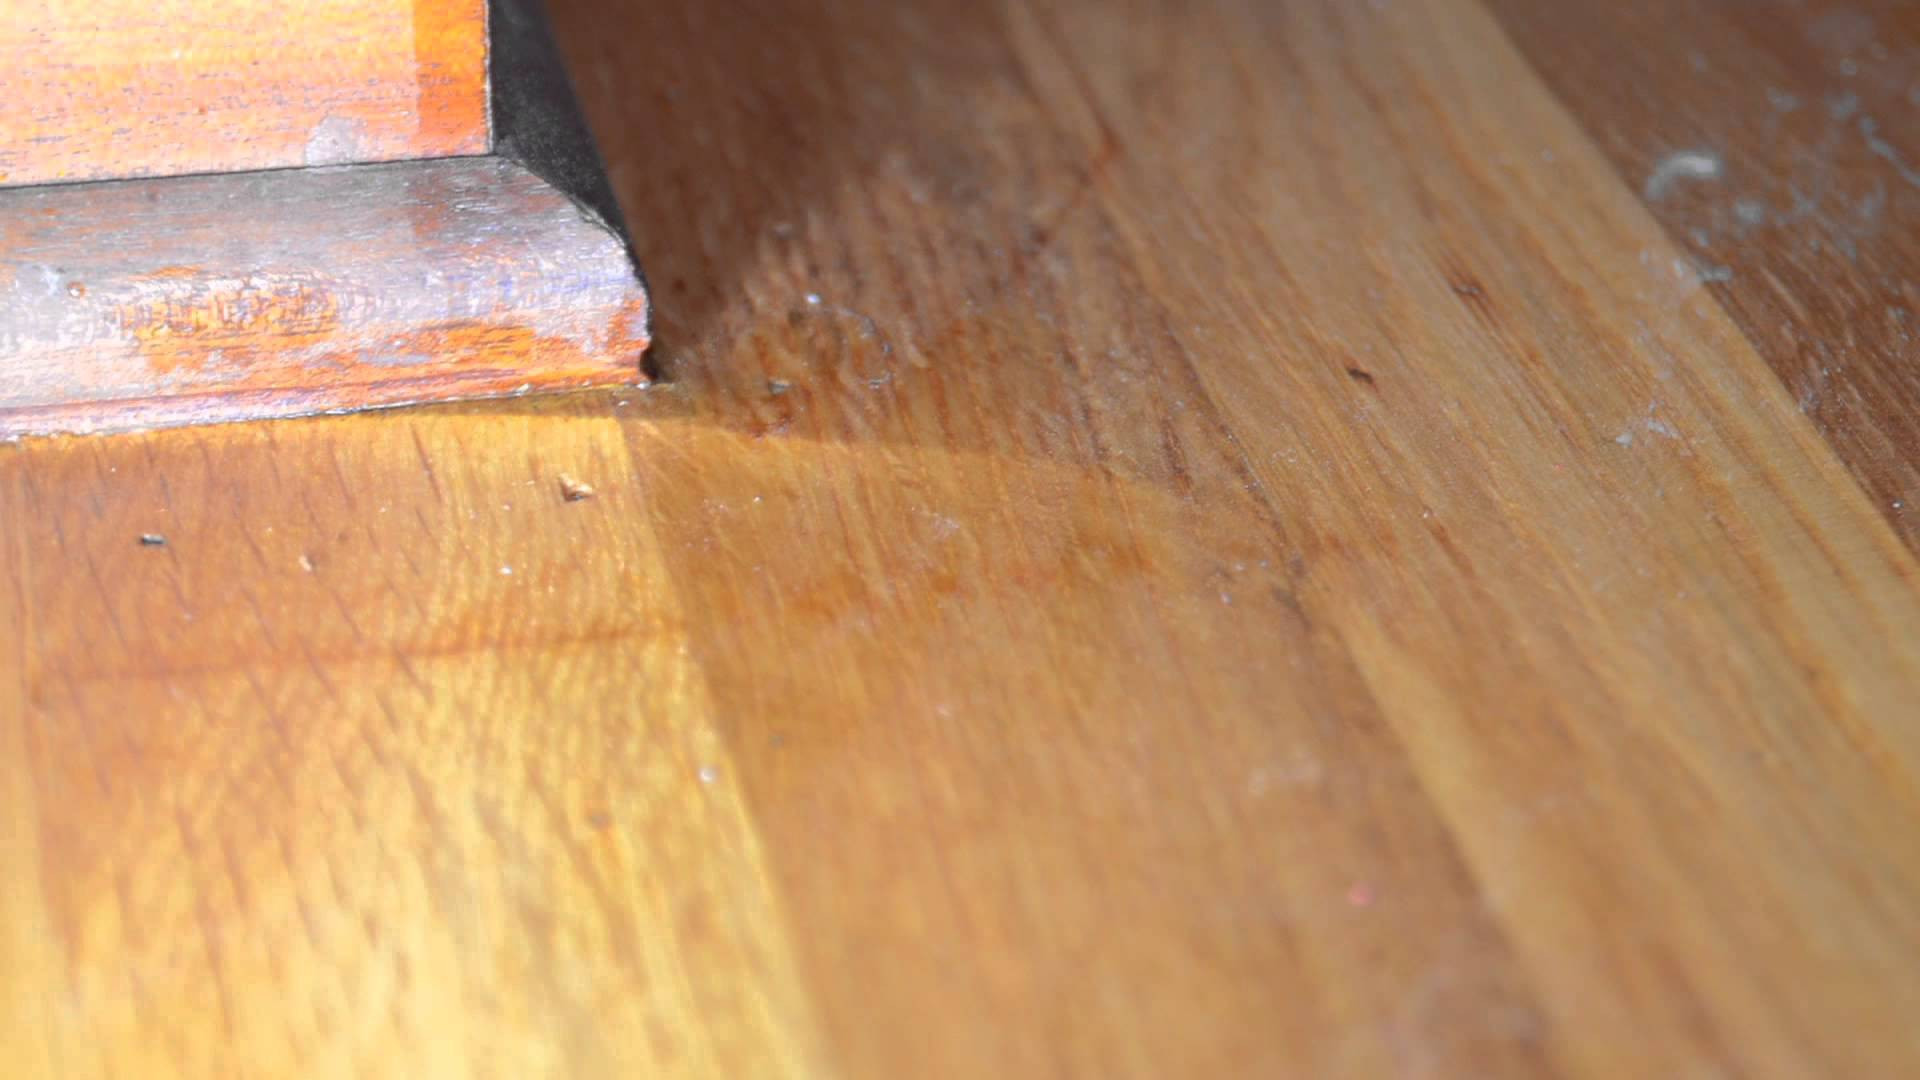 18 Nice Hardwood Flooring Contractors Seattle 2024 free download hardwood flooring contractors seattle of wood floor contractors floor plan ideas within wood floor contractors wood floor contractors hard wood floor refinishing contractors